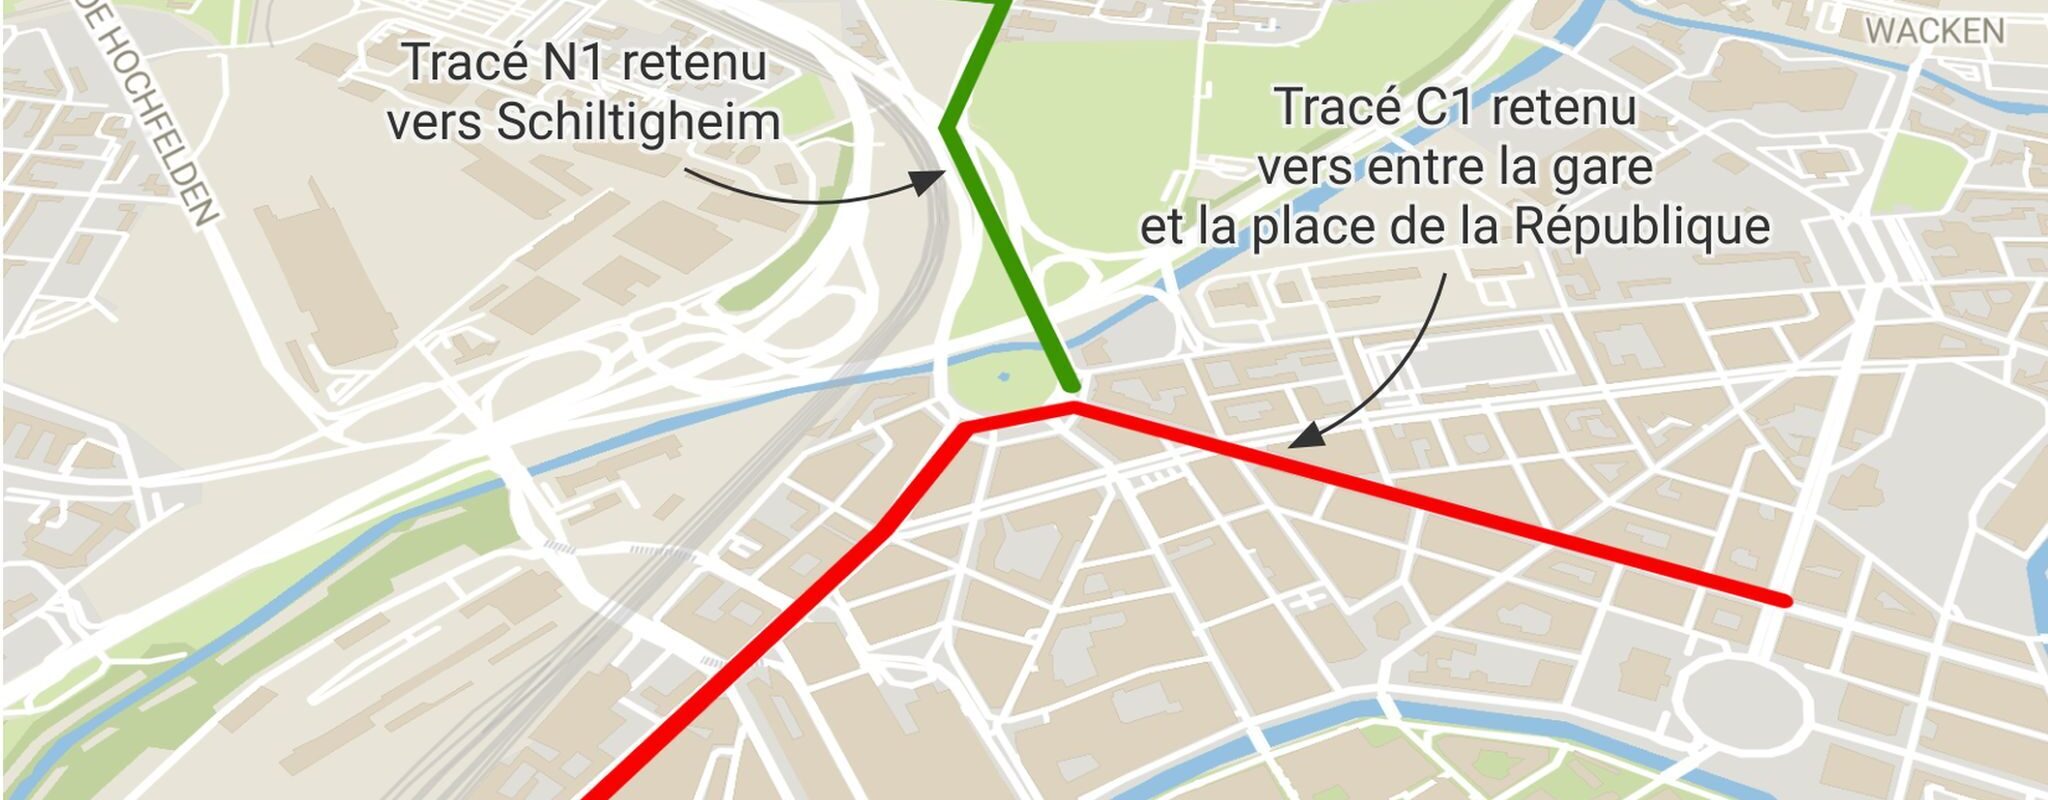 Tram avenue des Vosges : la municipalité devra garder la ligne